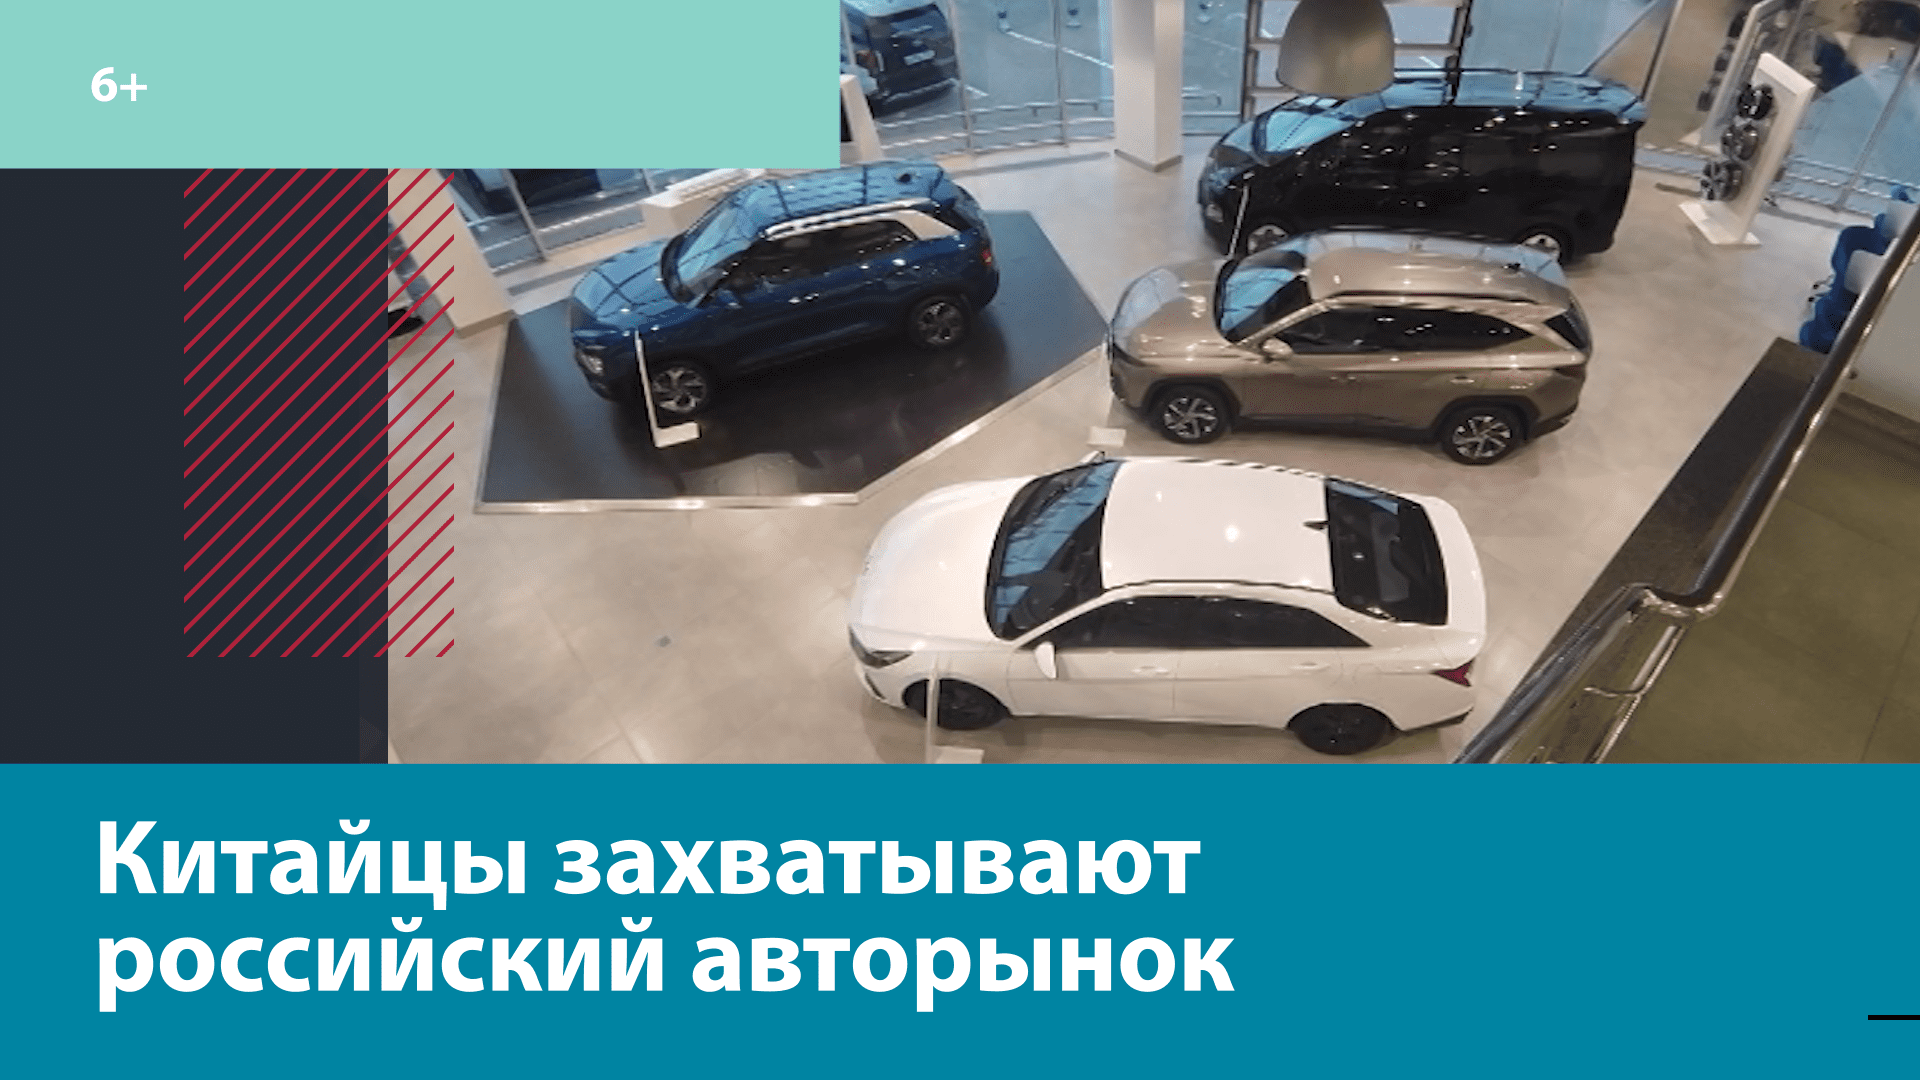 Почему москвичи всё чаще предпочитают китайские автомобили? — Москва FM